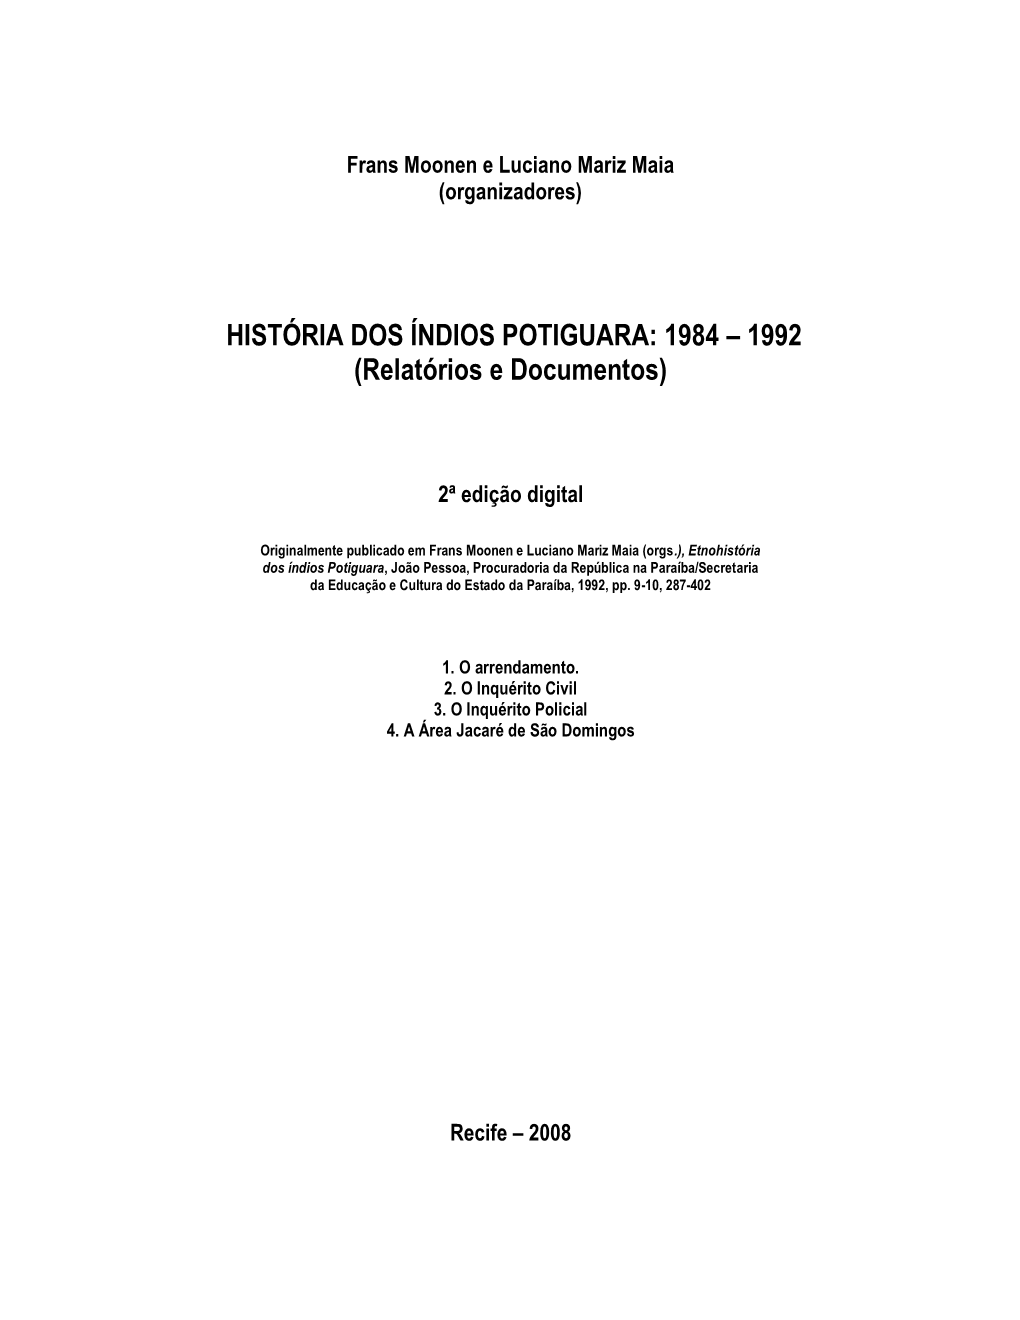 HISTÓRIA DOS ÍNDIOS POTIGUARA: 1984 – 1992 (Relatórios E Documentos)